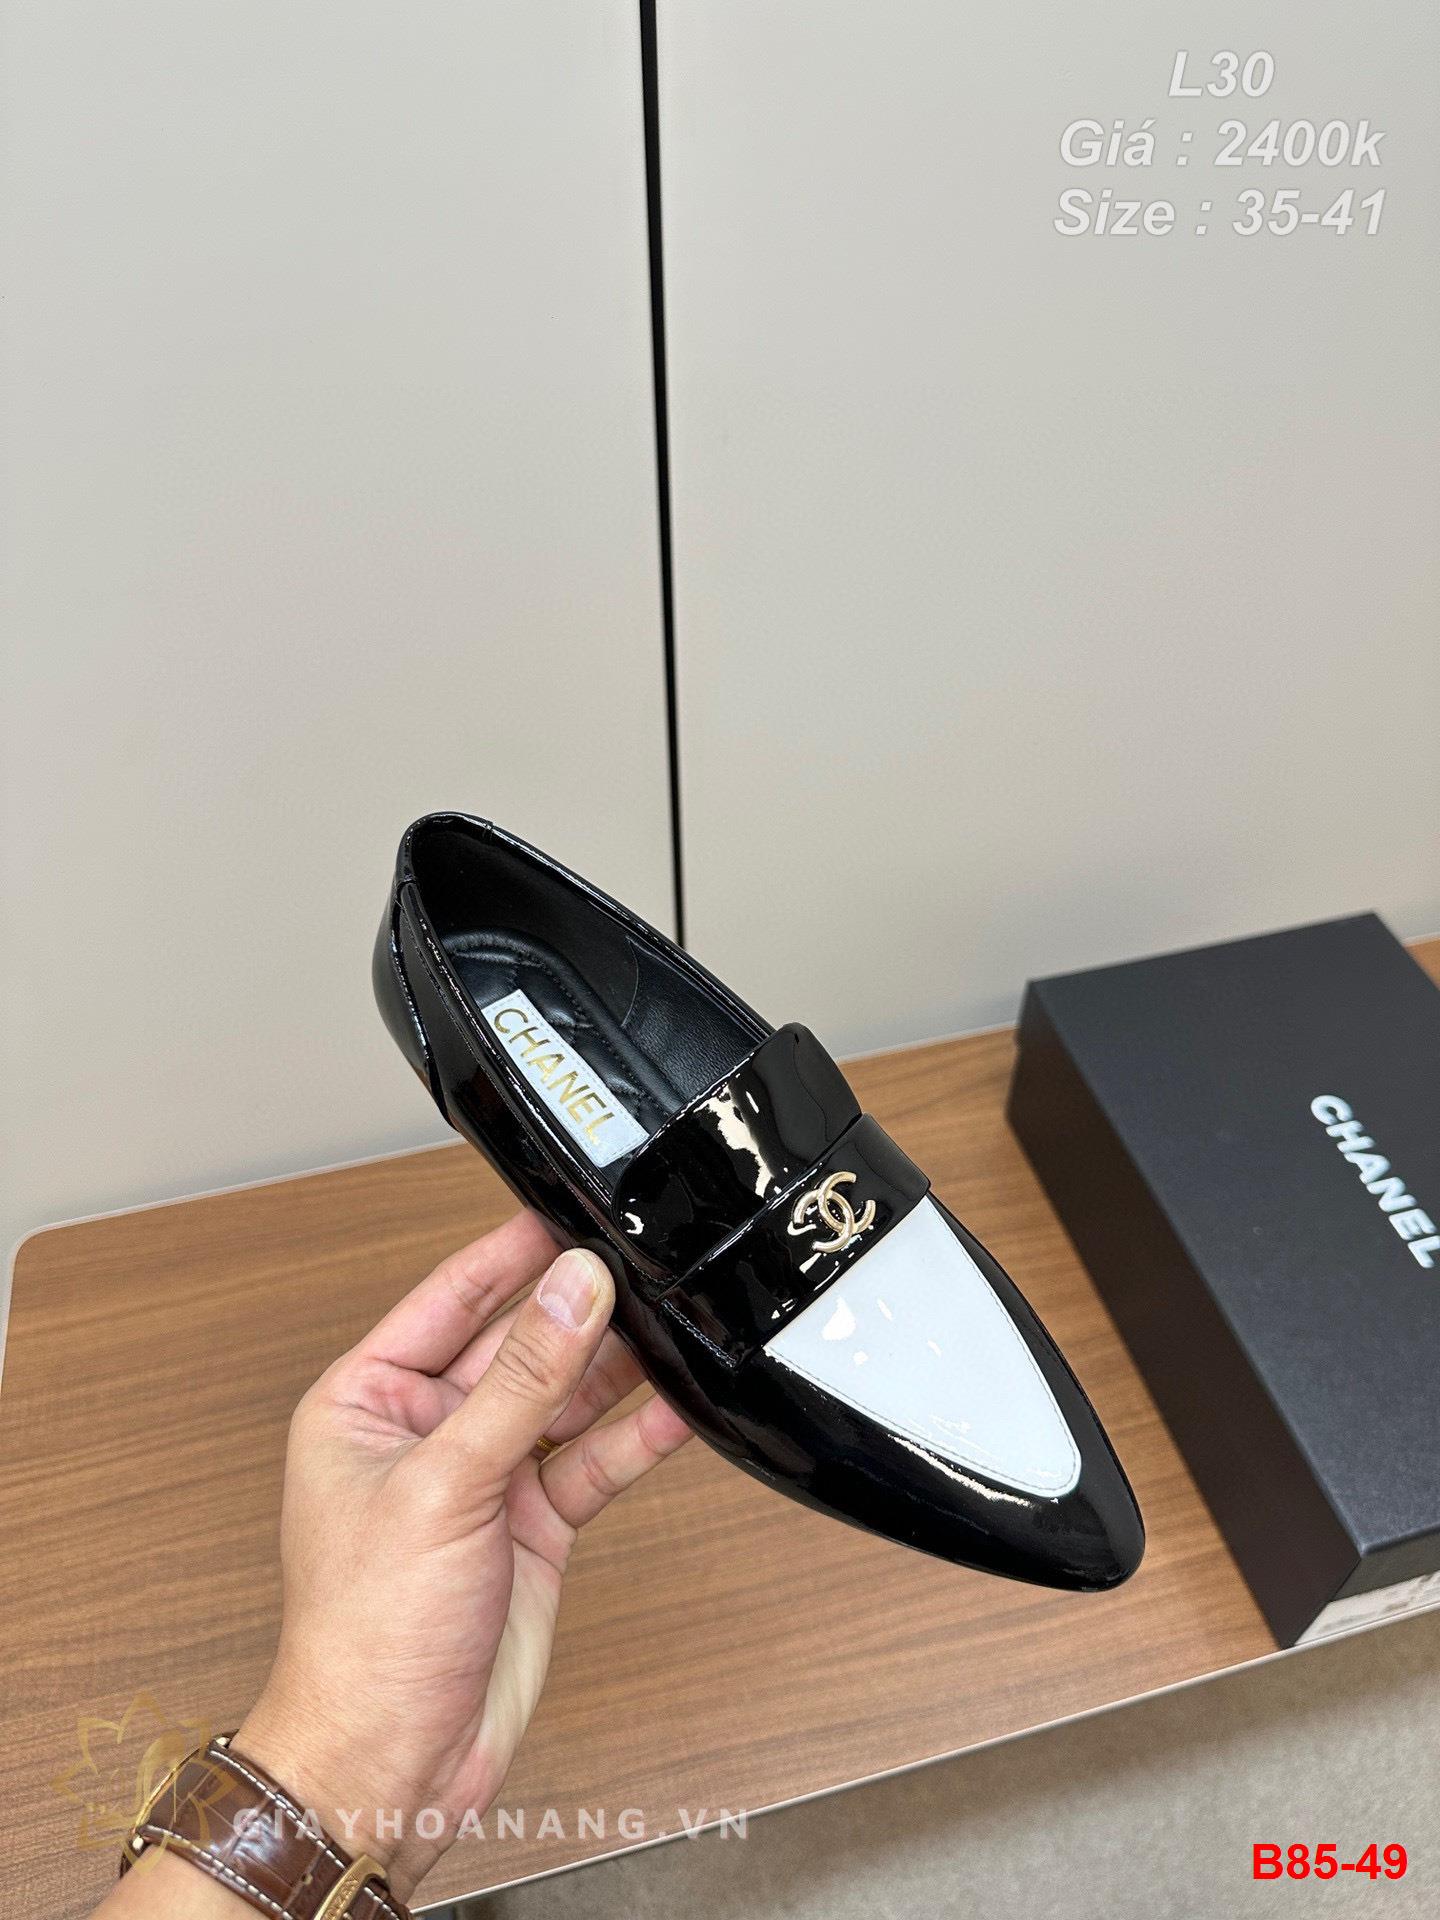 B85-49 Chanel giày bệt siêu cấp